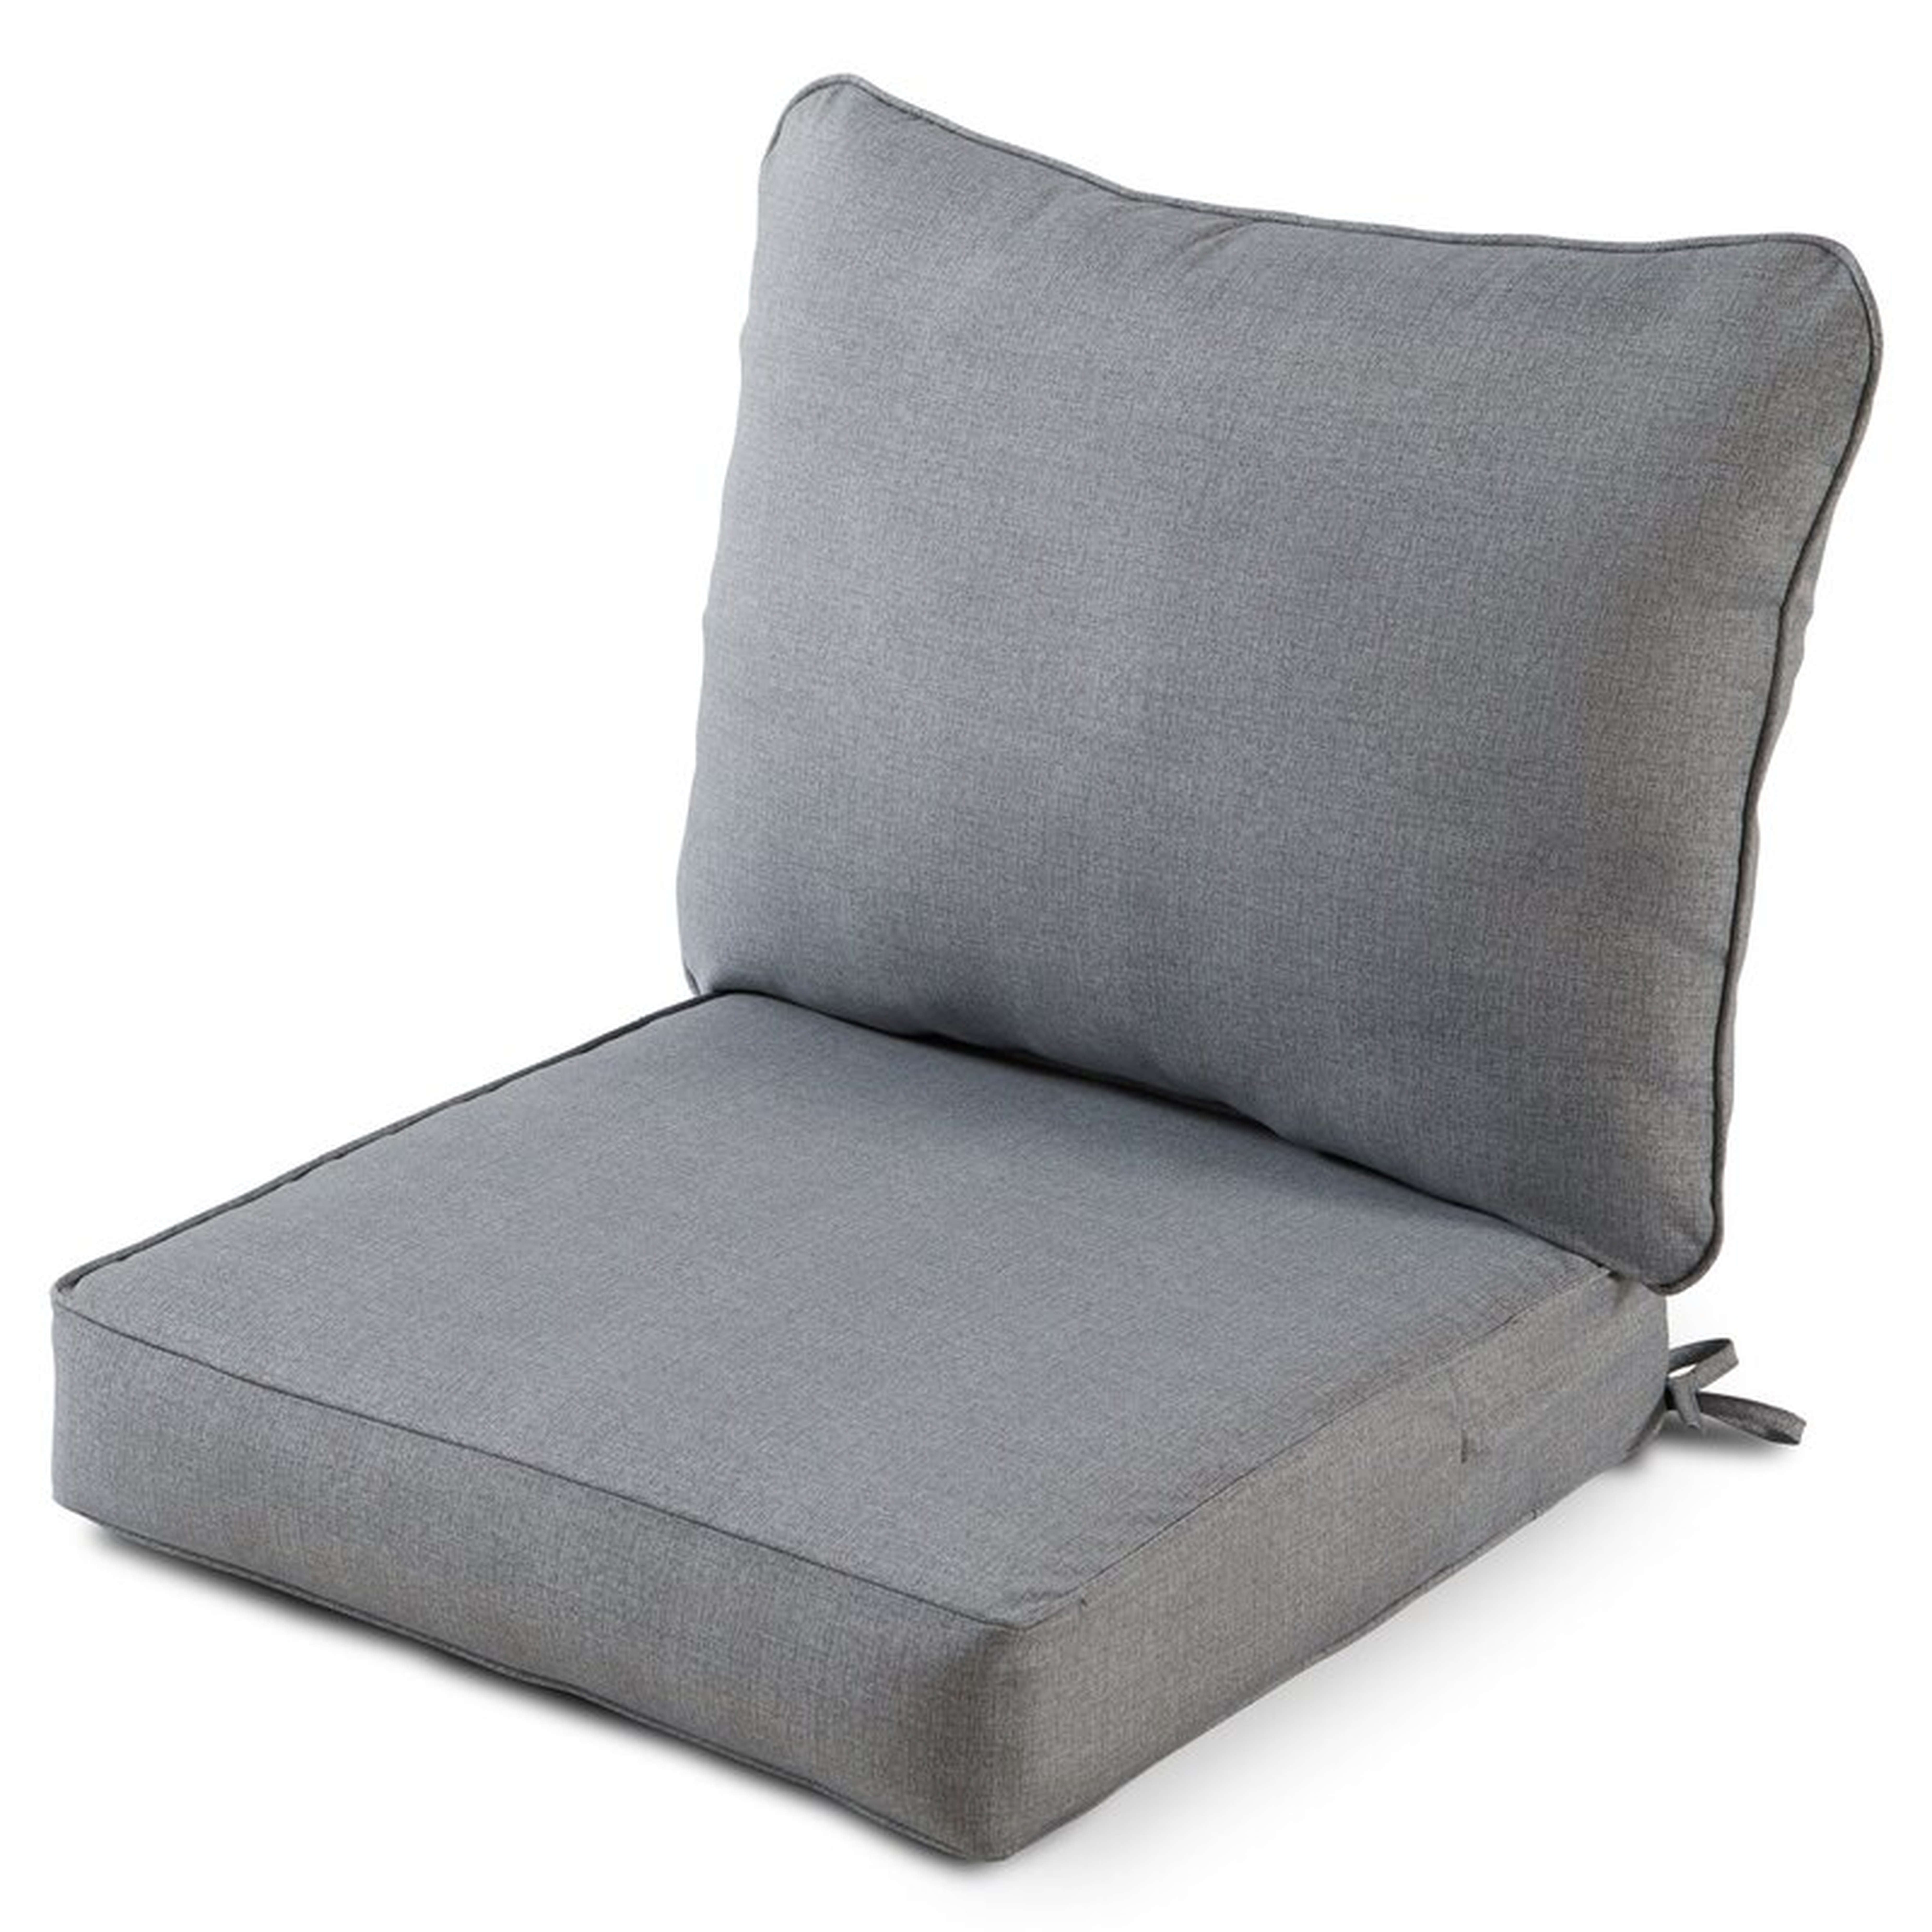 2 Piece Deep Seat Outdoor Replacement Cushion Set - Wayfair